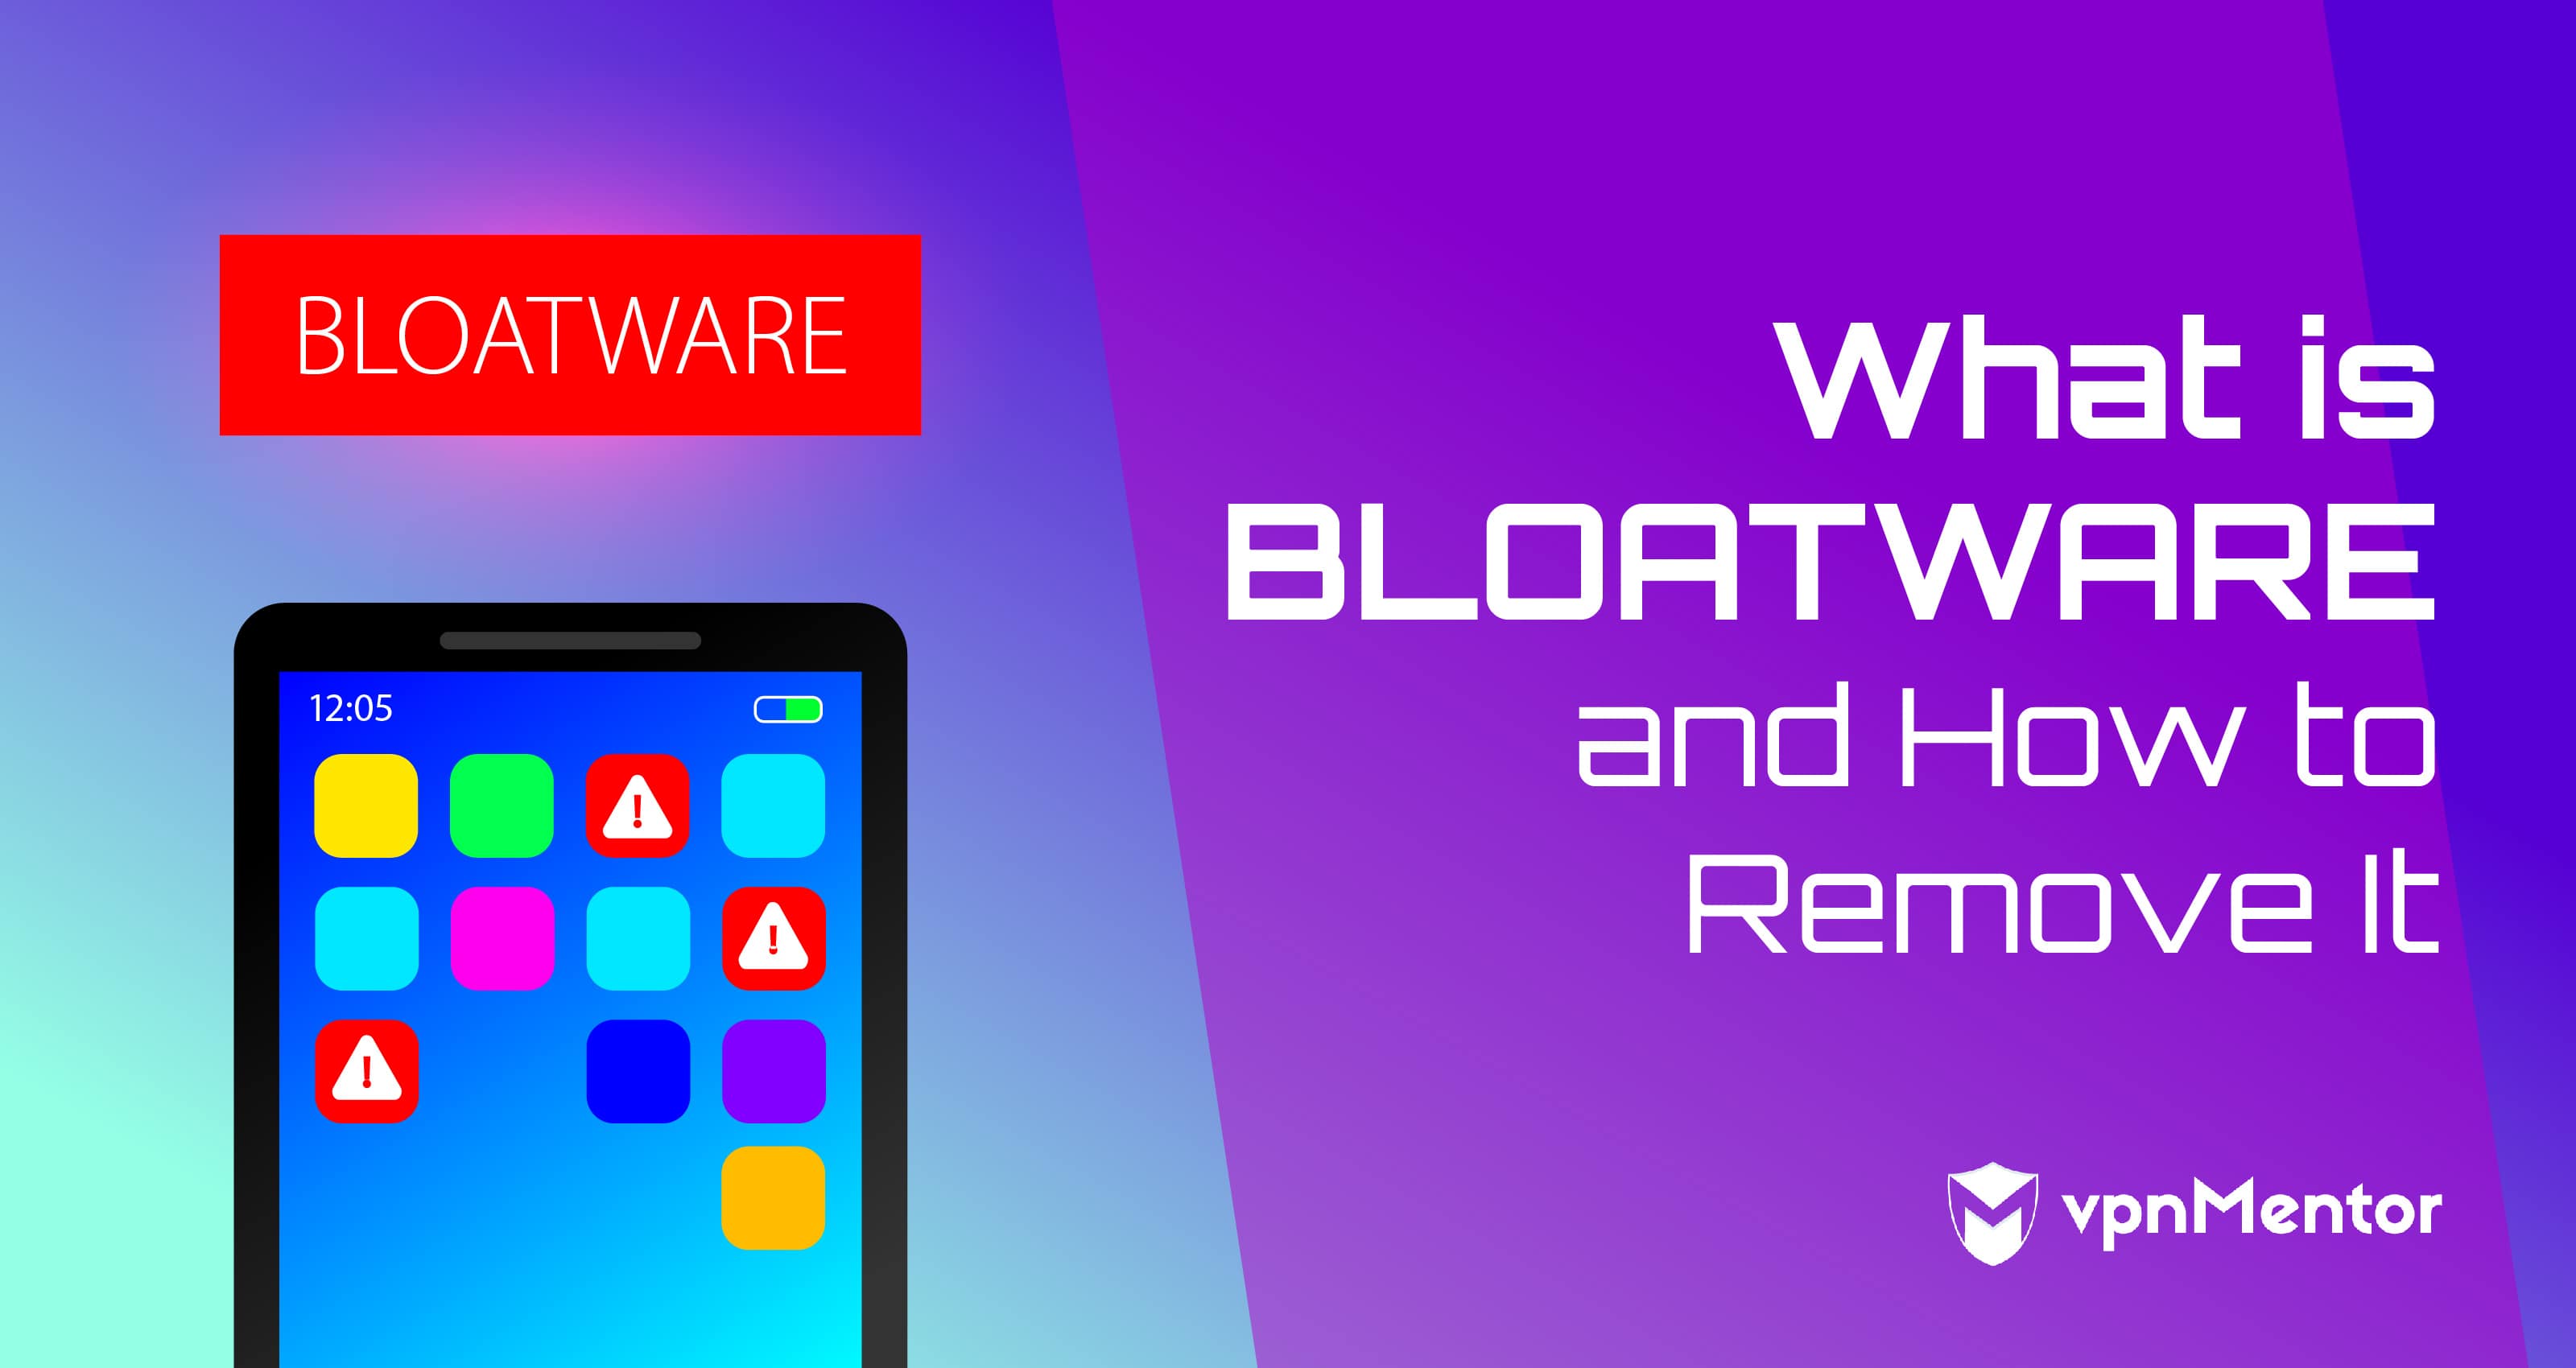 What is Bloatware?